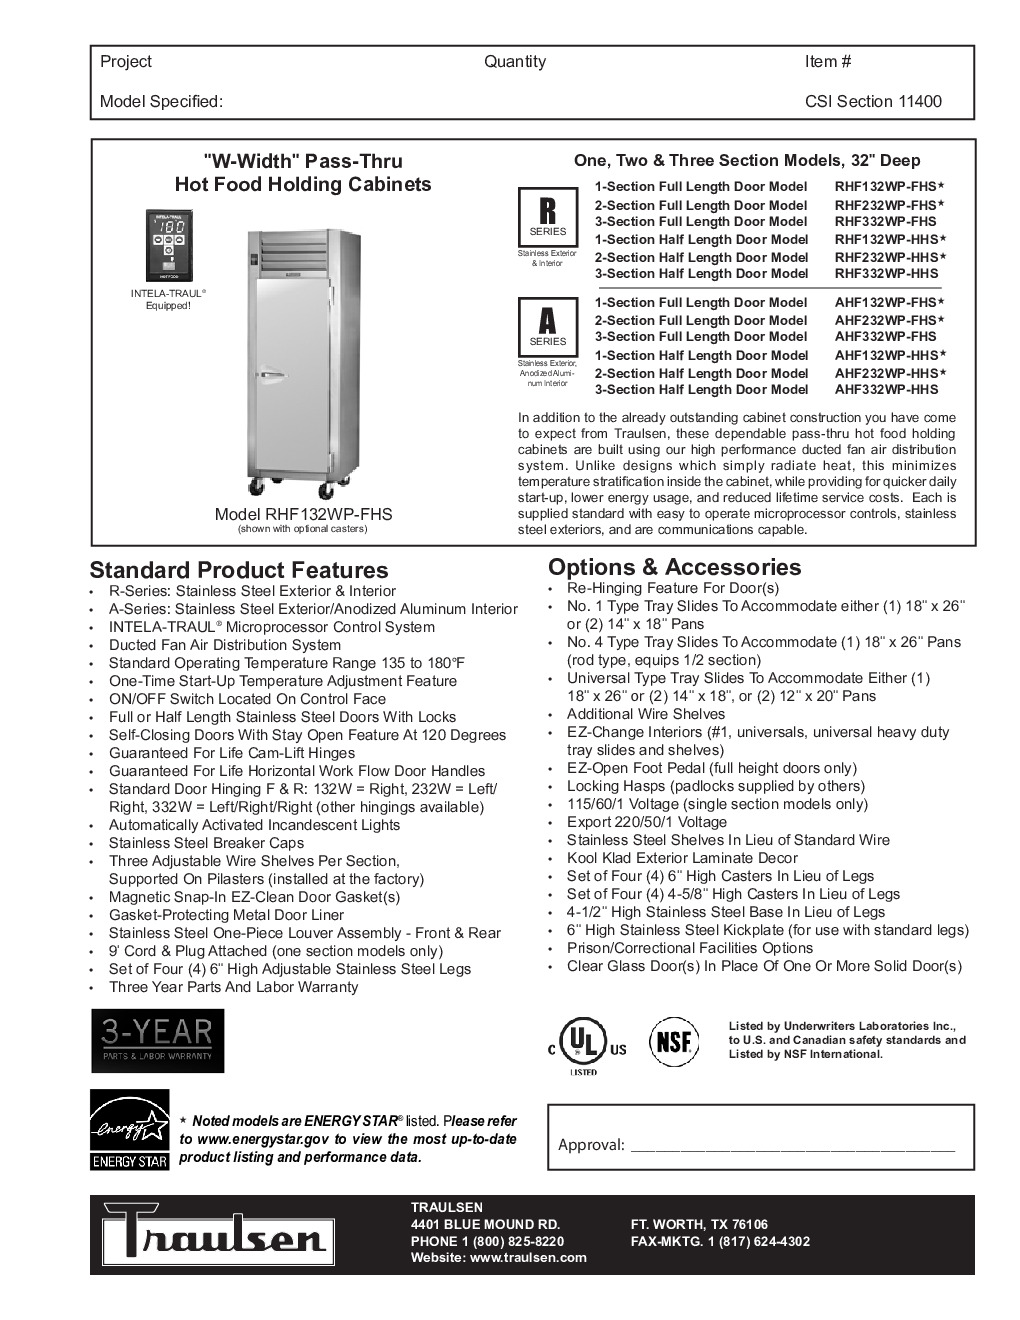 Traulsen RHF332WP-FHG Pass-Thru Heated Cabinet